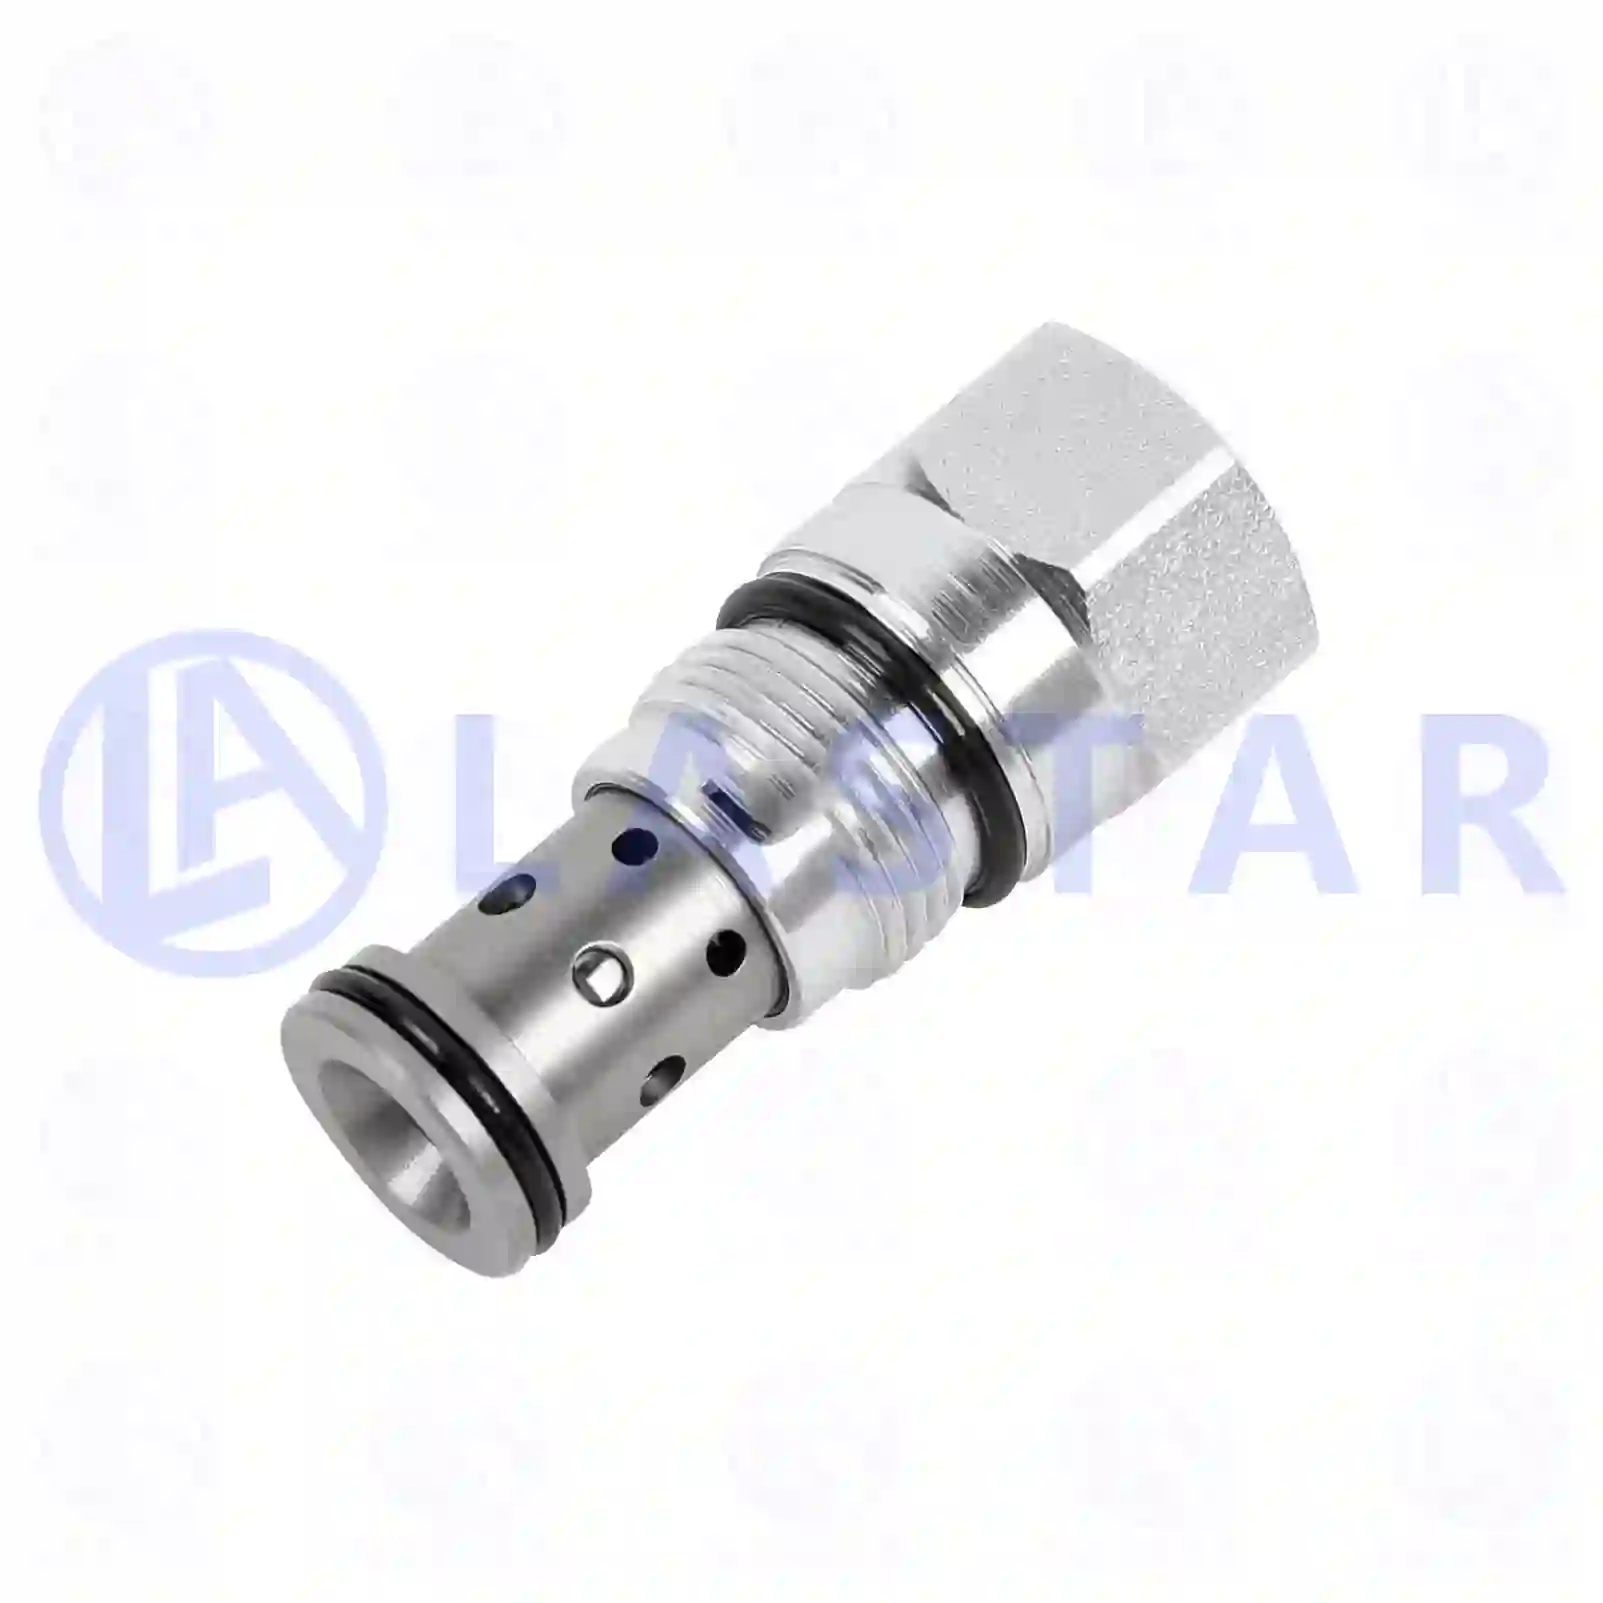 Injection Pump Overflow valve, la no: 77724585 ,  oem no:1427453, ZG10484-0008 Lastar Spare Part | Truck Spare Parts, Auotomotive Spare Parts